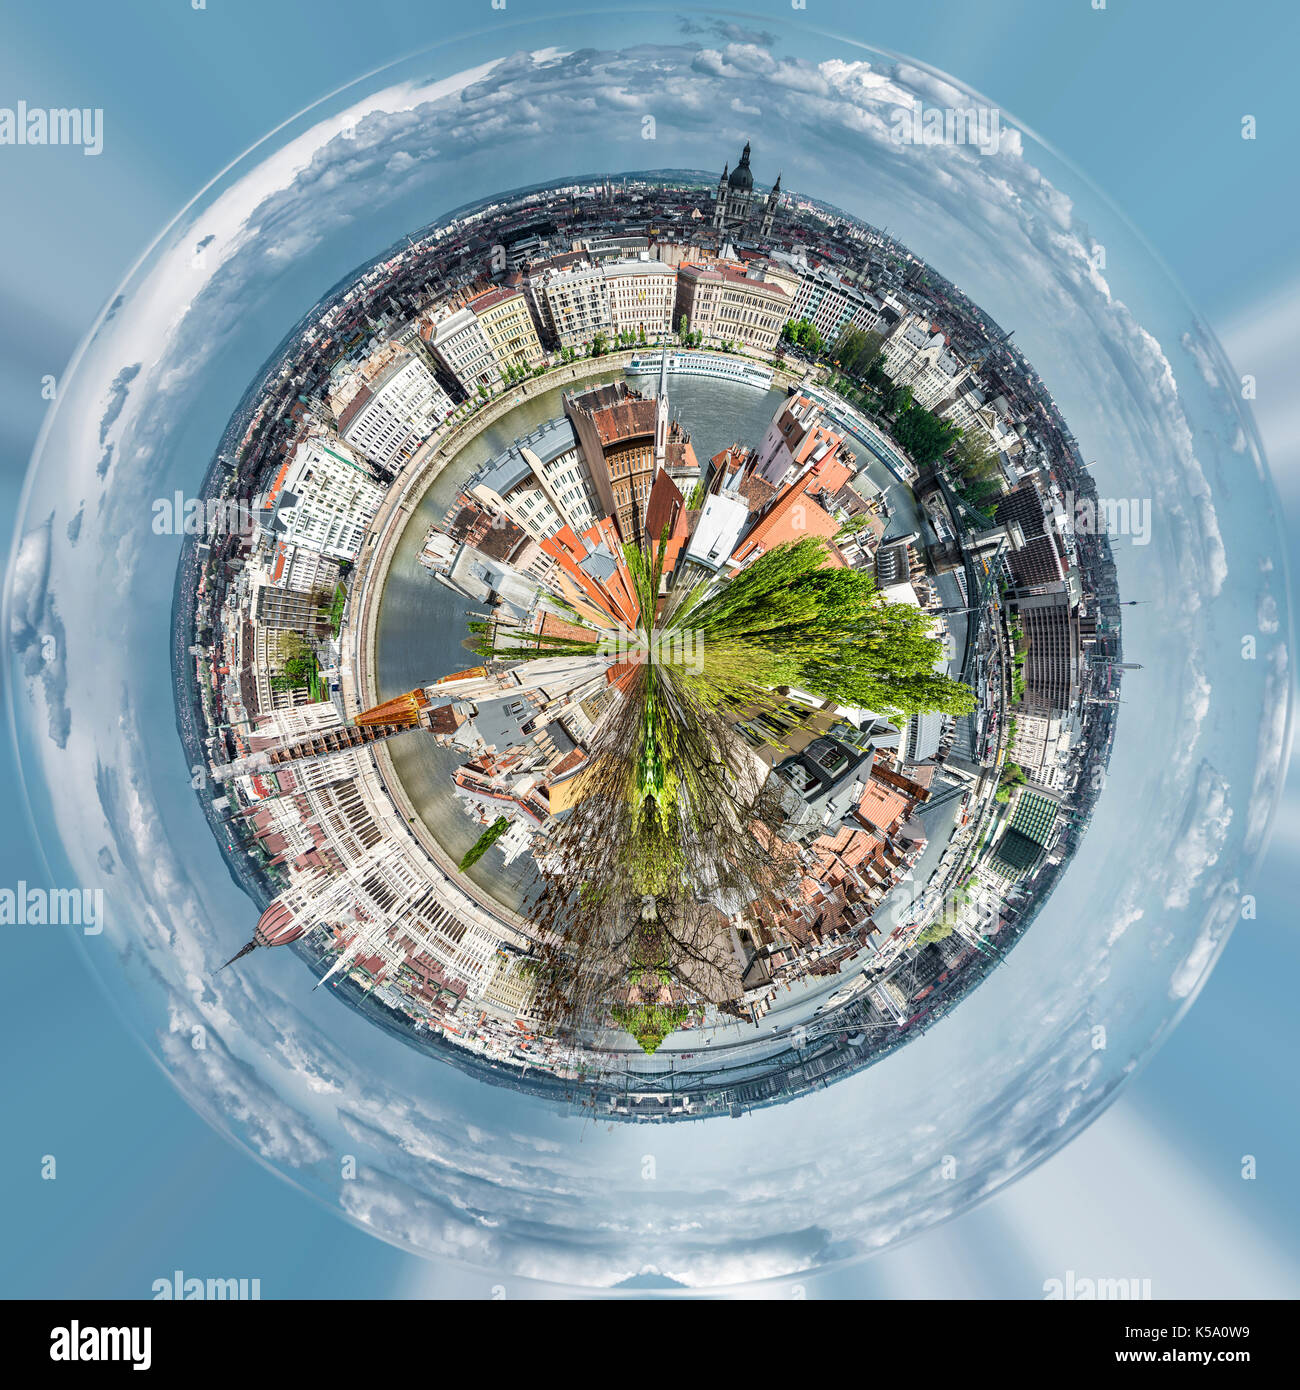 Vista a 360 gradi immagini e fotografie stock ad alta risoluzione - Alamy